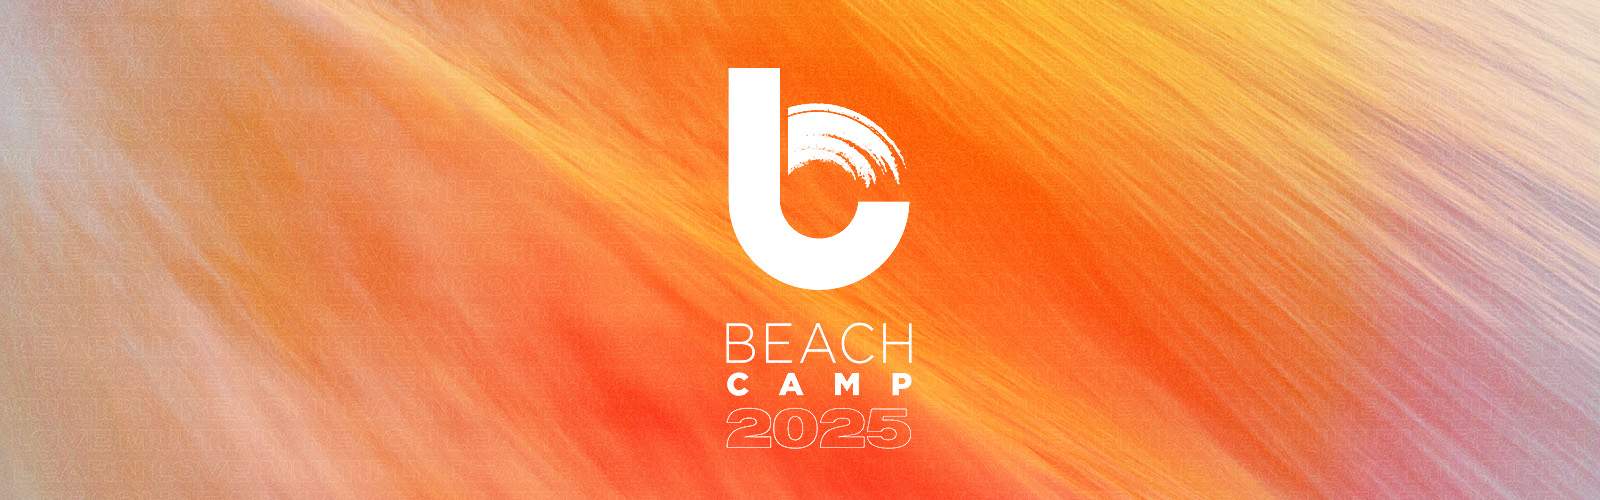 Beach Camp 2025